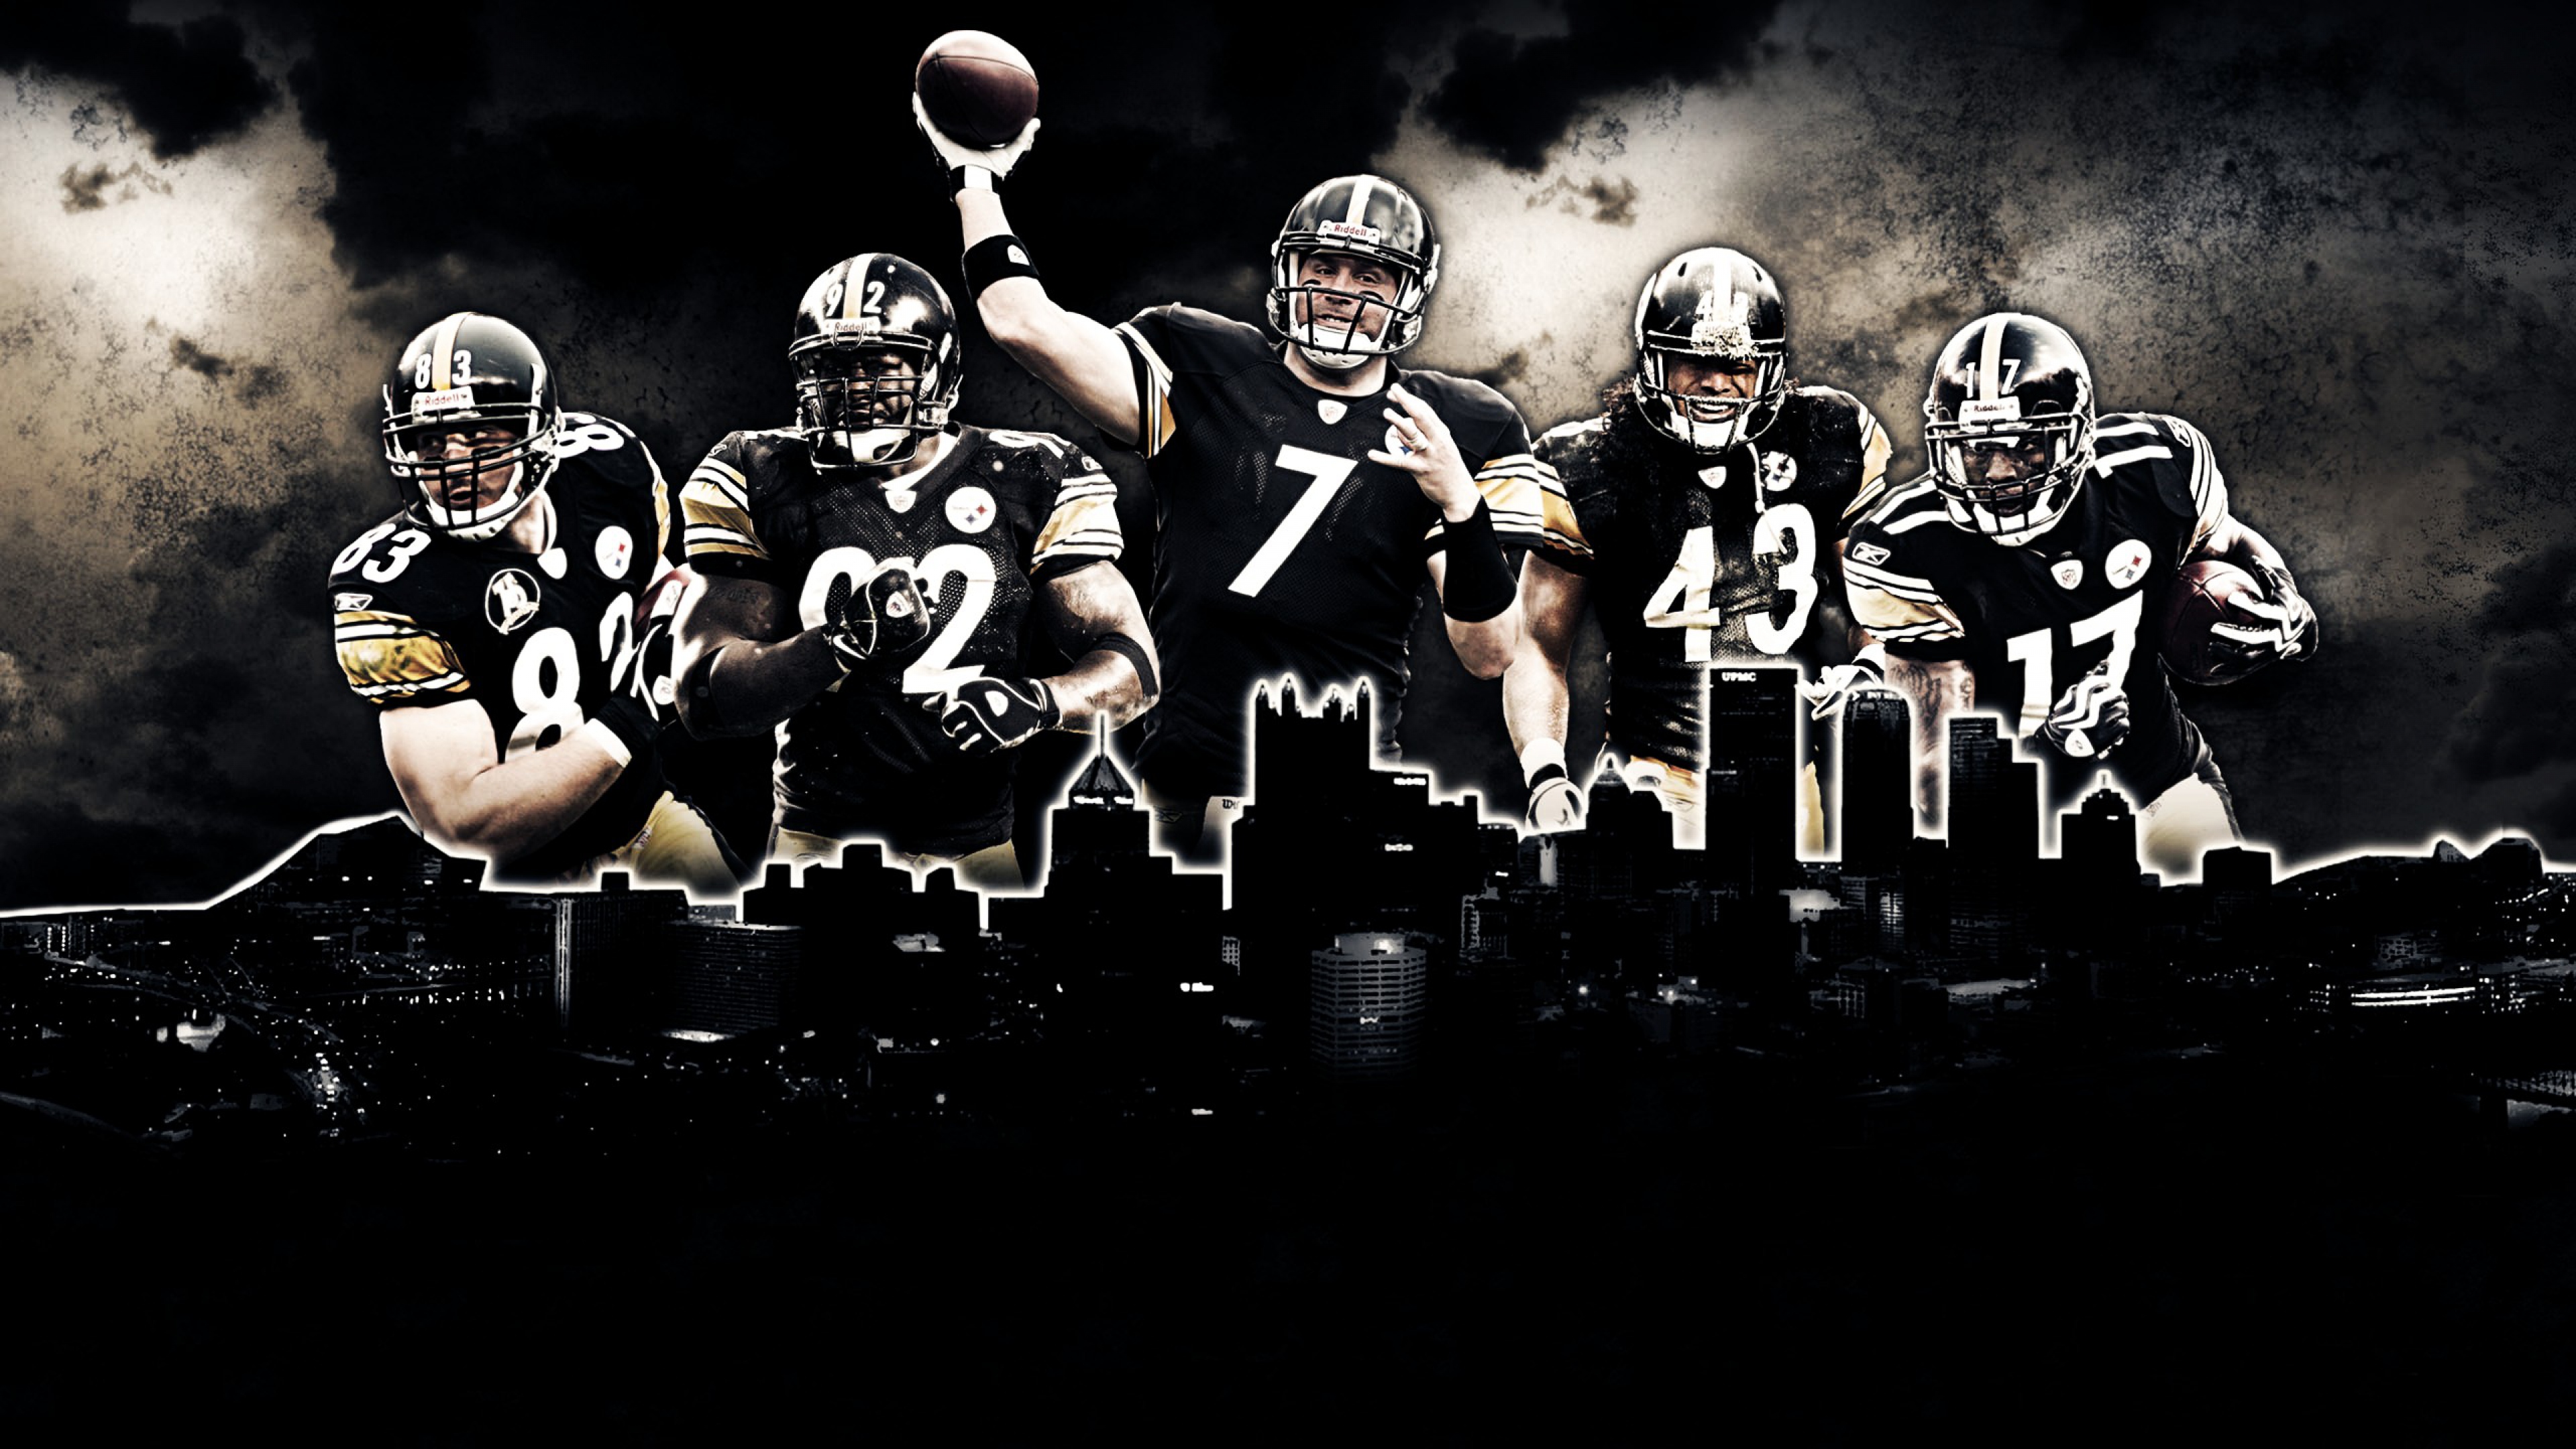 NFL Team Pittsburgh Steelers wallpaper HD. Free desktop background